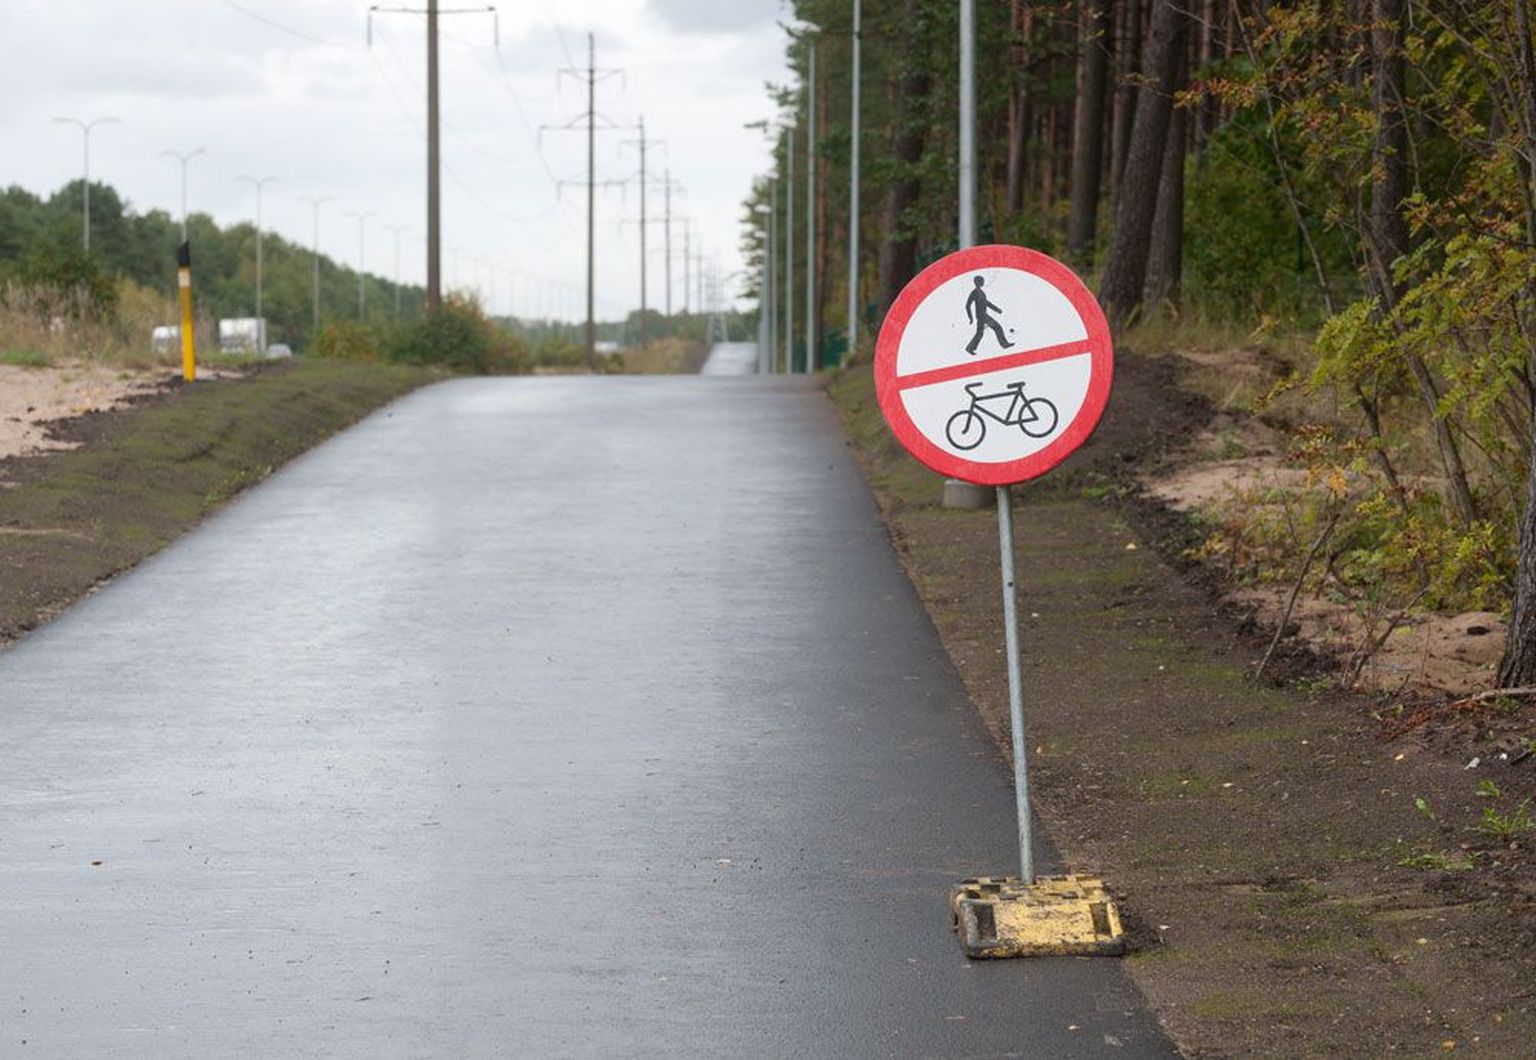 Kuigi mõnes kohas seisavad veel keelumärgid, on Järvevana tee äärse kergliiklustee ja tunneli kasutamine alates 1. septembrist ametlikult lubatud.